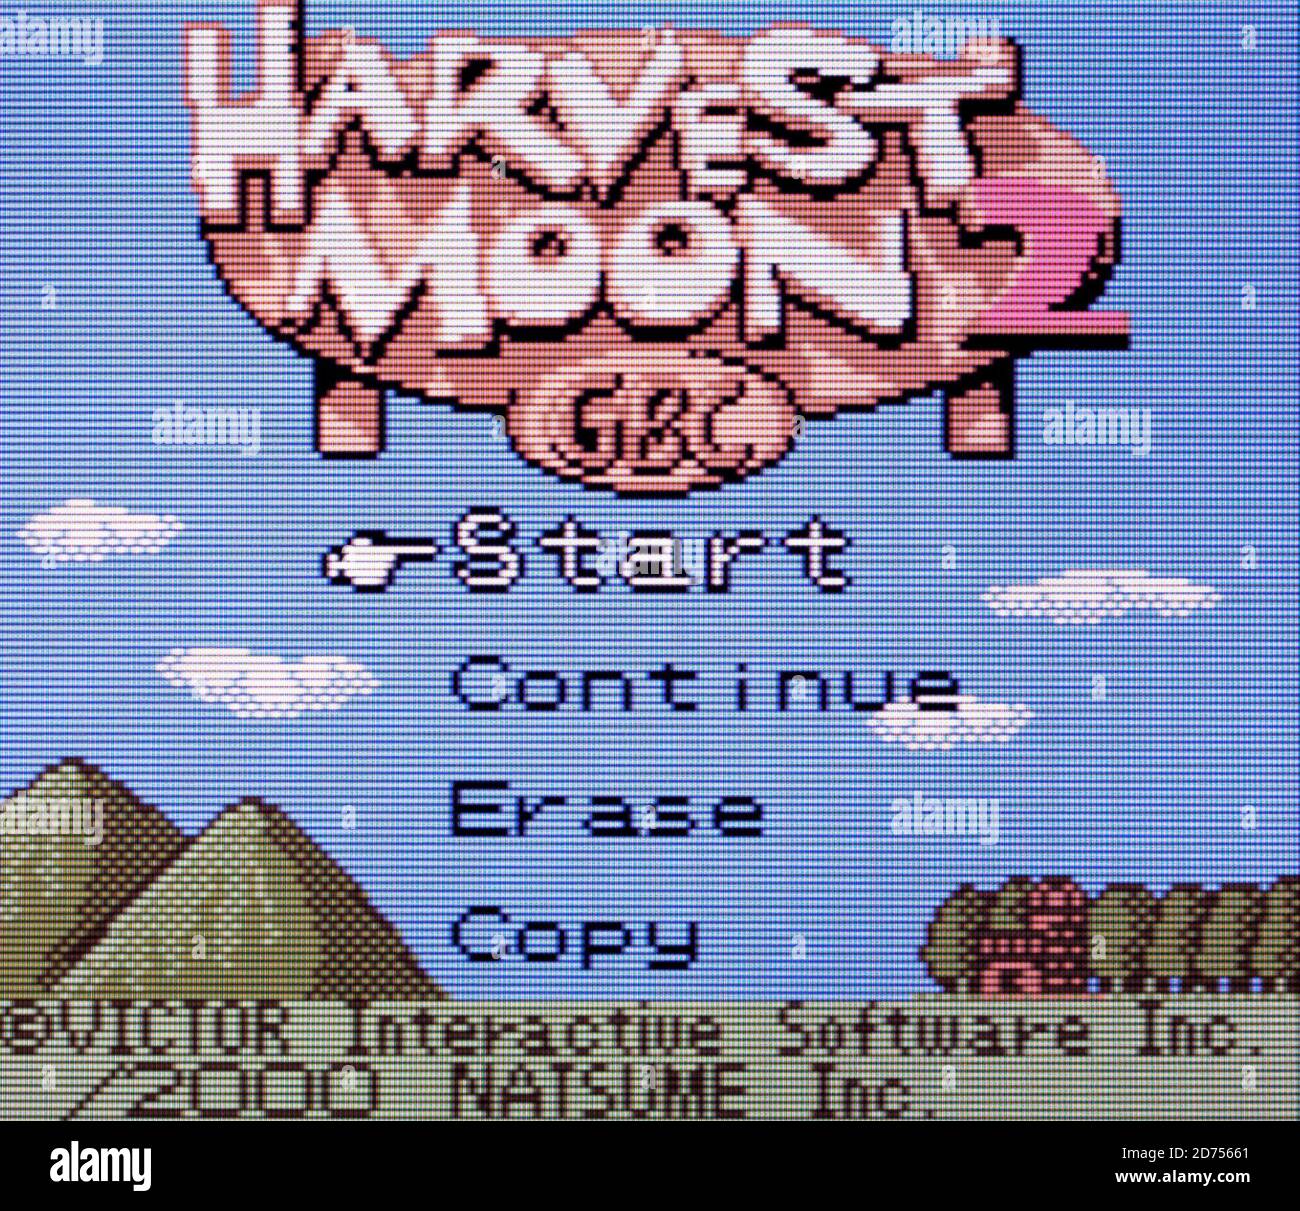 Harvest Moon 2 - jeu Nintendo Boy Color Videogame - Usage éditorial uniquement Banque D'Images